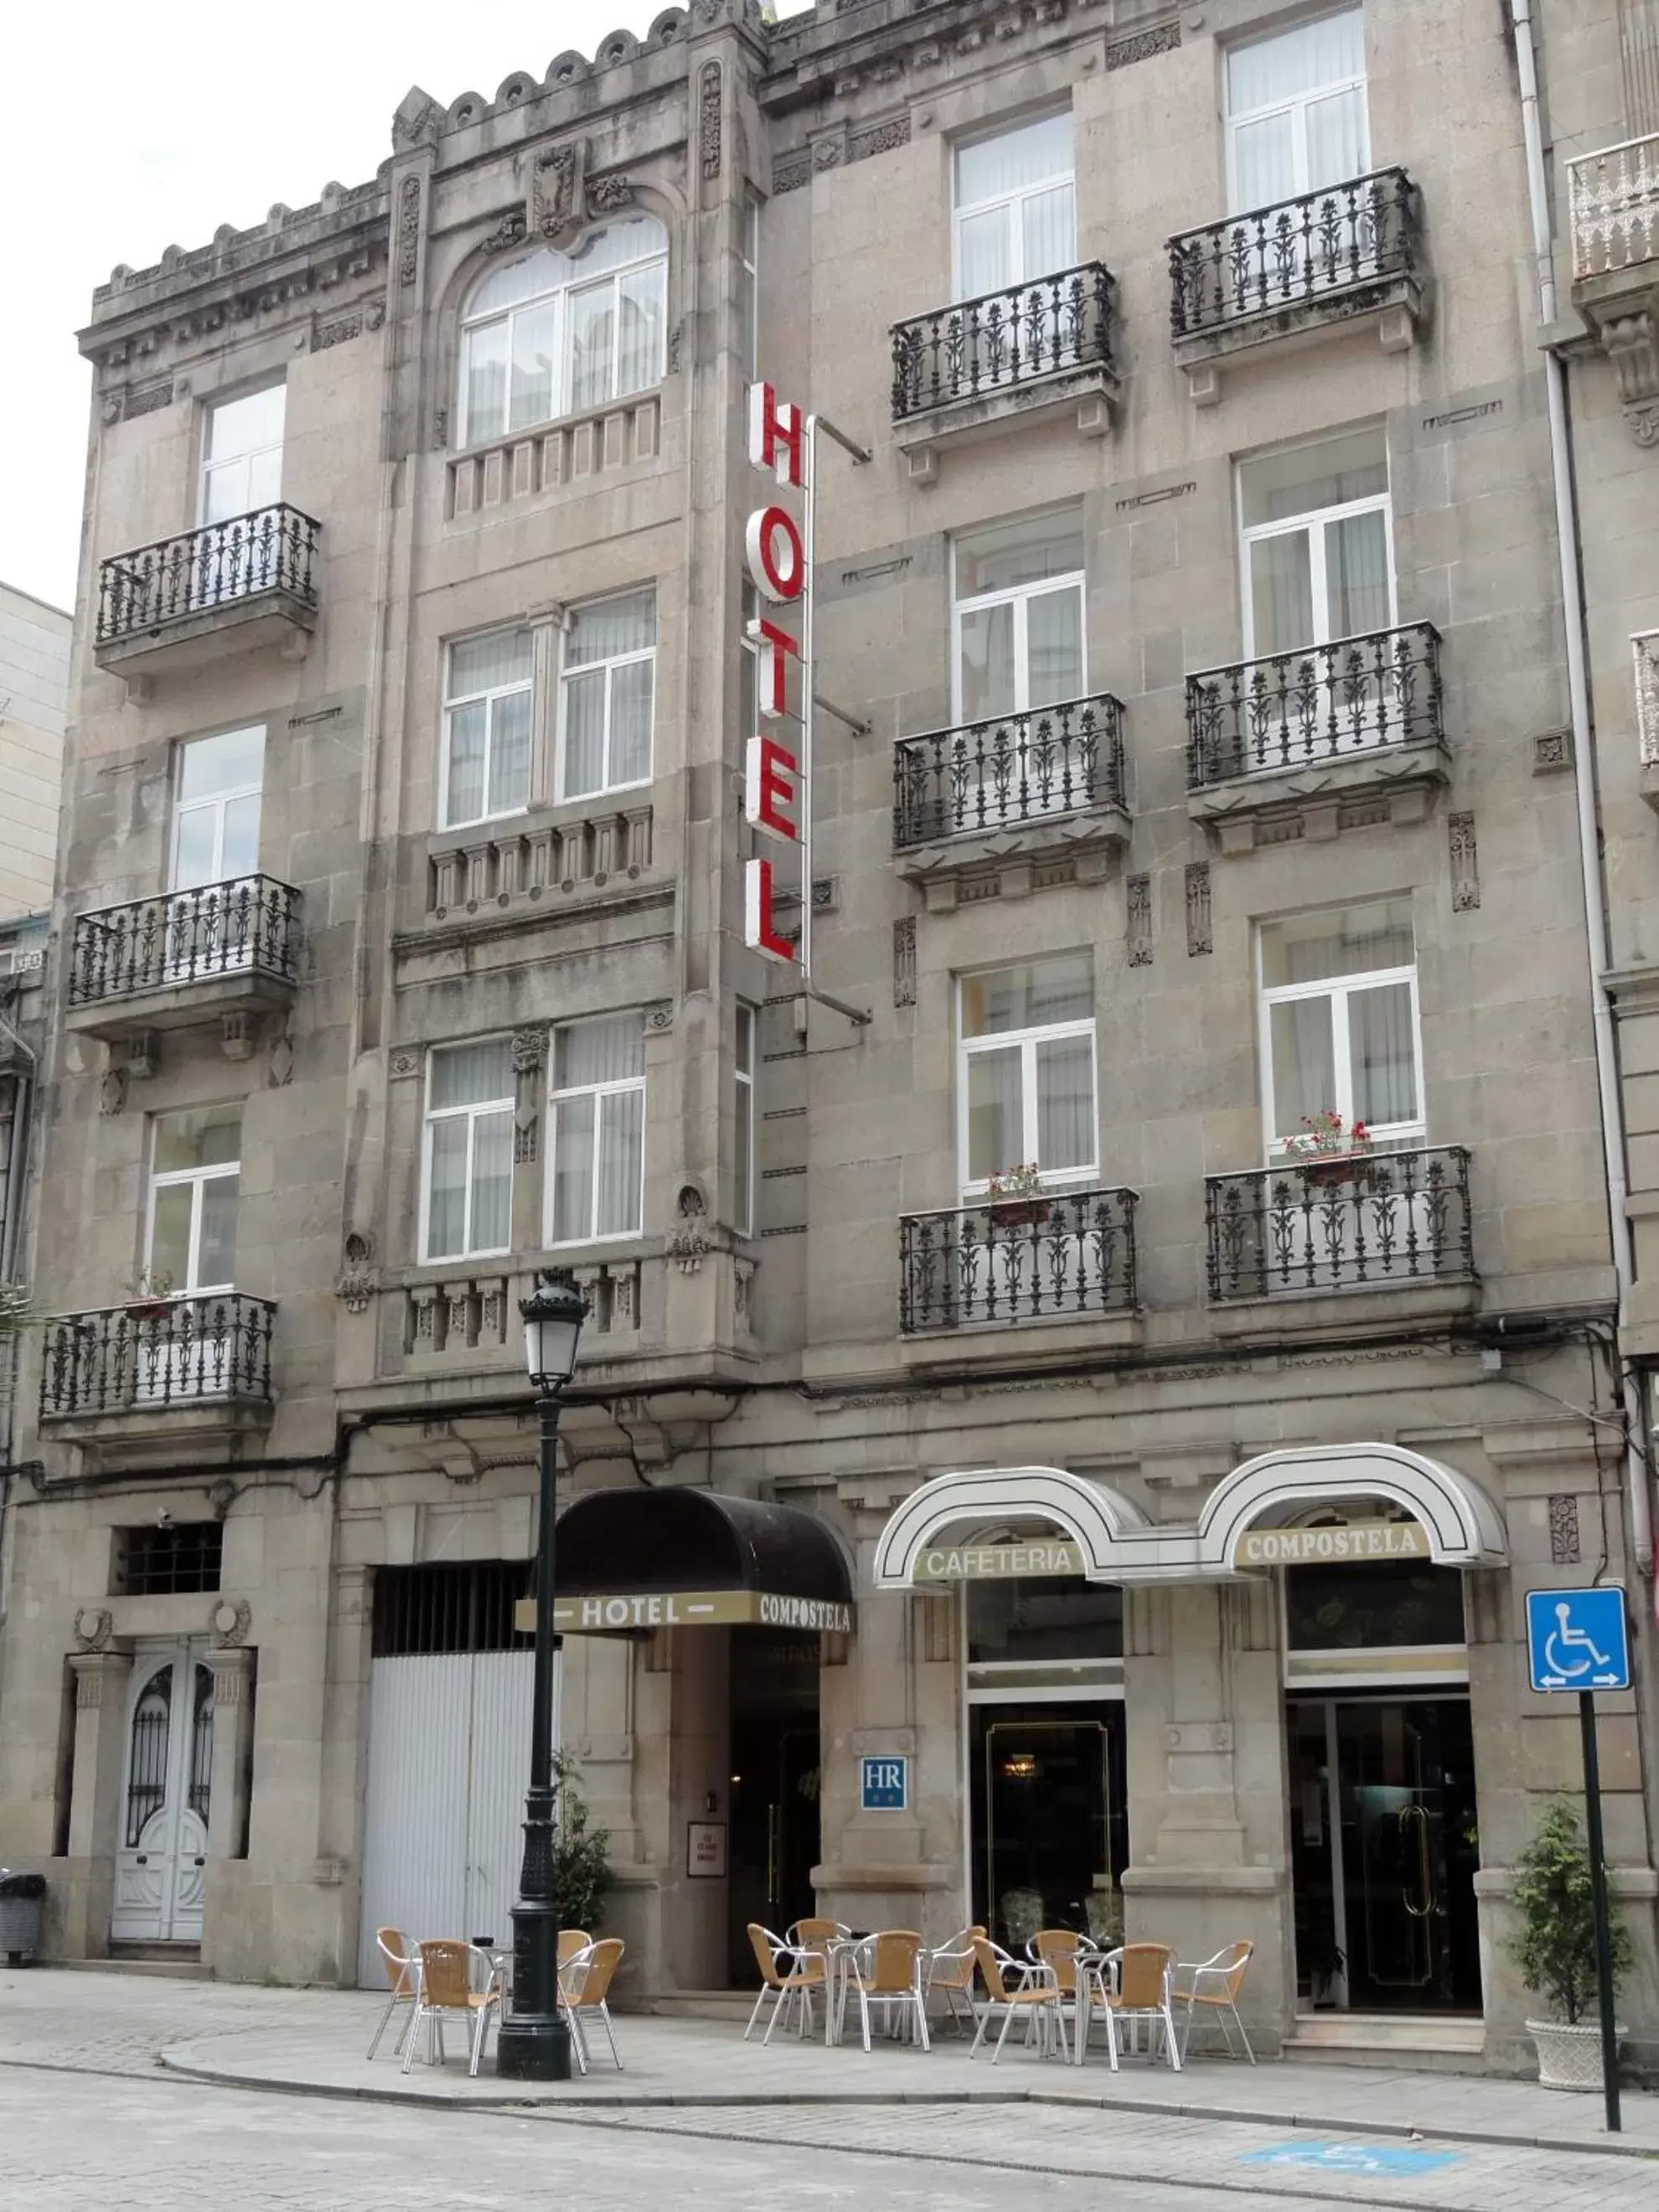 Facade/entrance, Property Building in Hotel Compostela Vigo